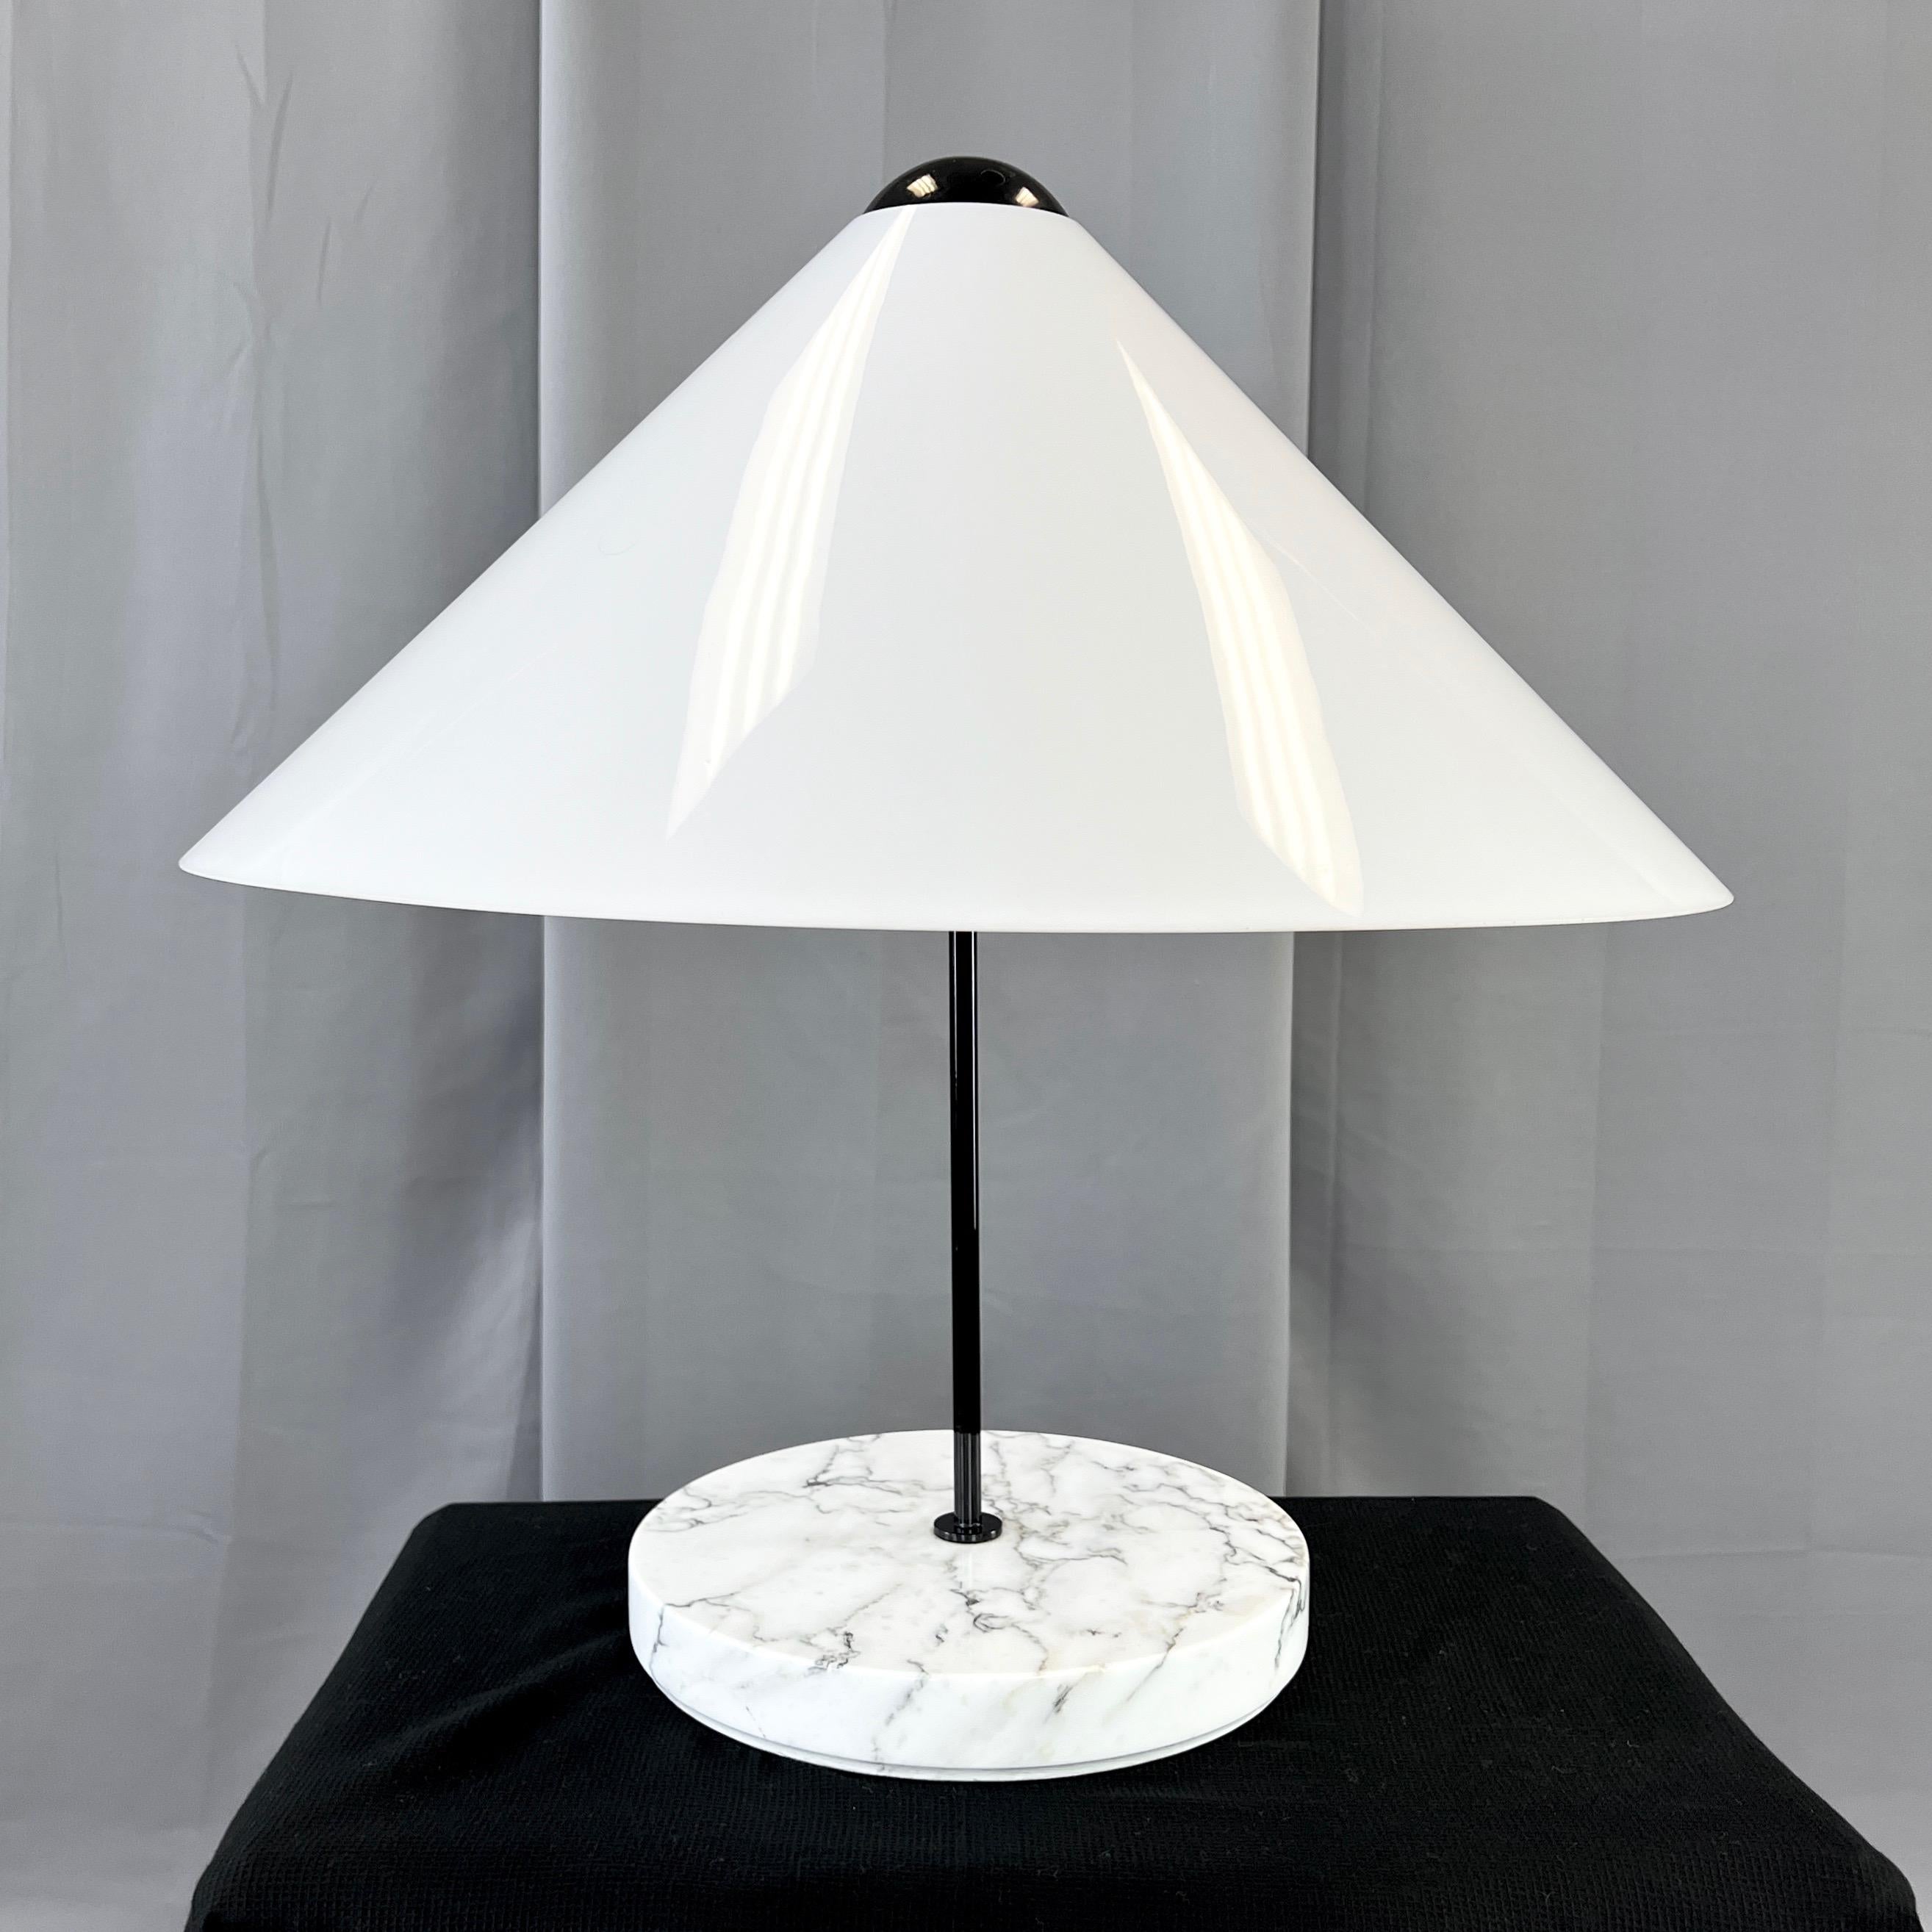 Lampe de table postmoderne Snow de 1973 de Vico Magistretti pour Oluce.

Une très belle lampe de table modèle 201 de la collection Snow de l'icône du design italien Vico Magistretti pour Oluce - composée d'une lampe de table, d'un lampadaire et d'un